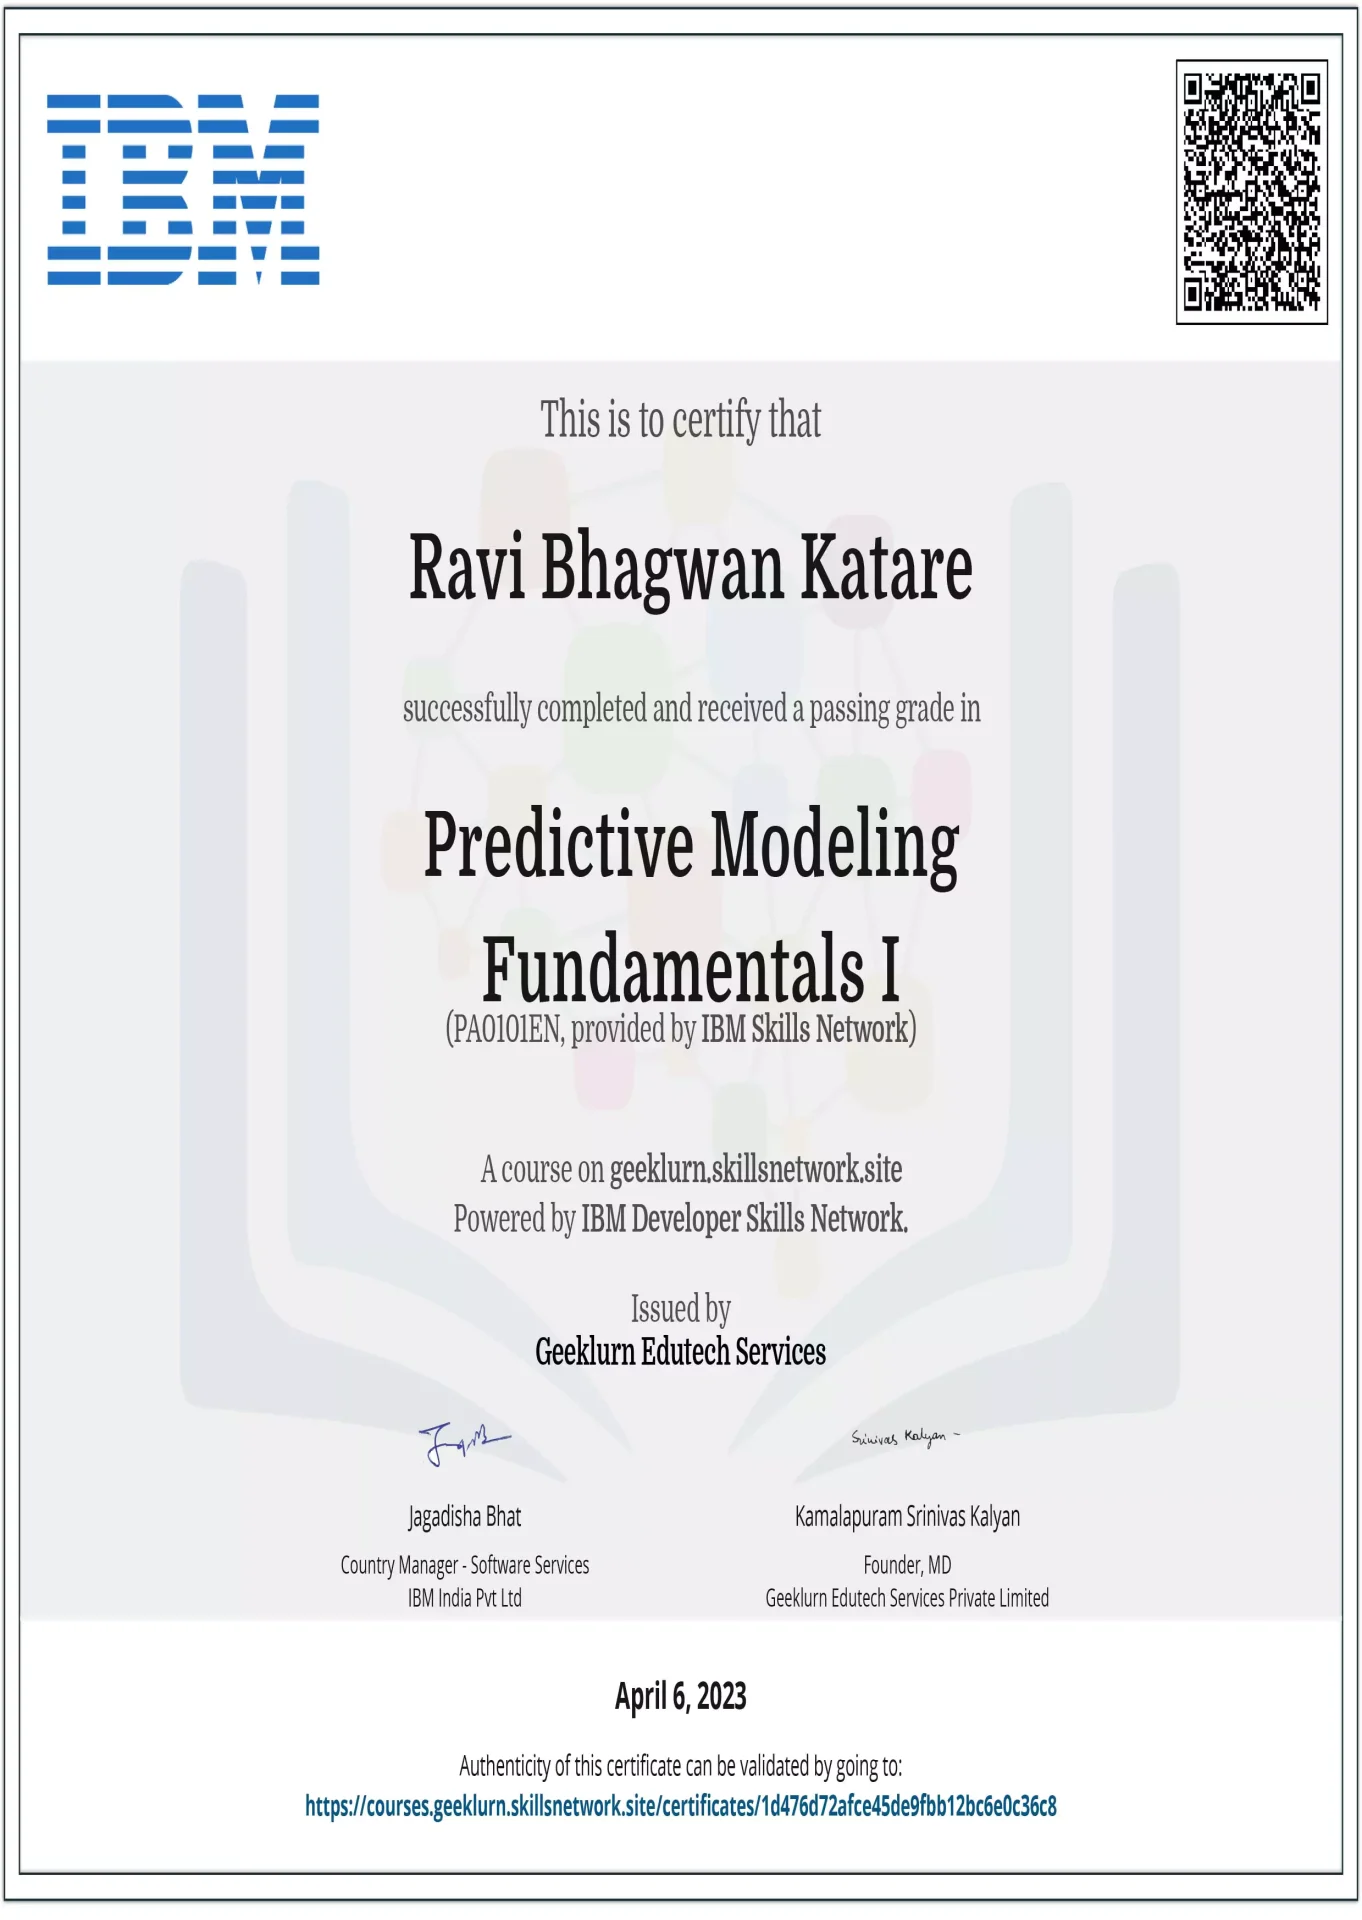 ibm-skills-network-pa0101en-certificate-geeklurn-predictive-modelling-101